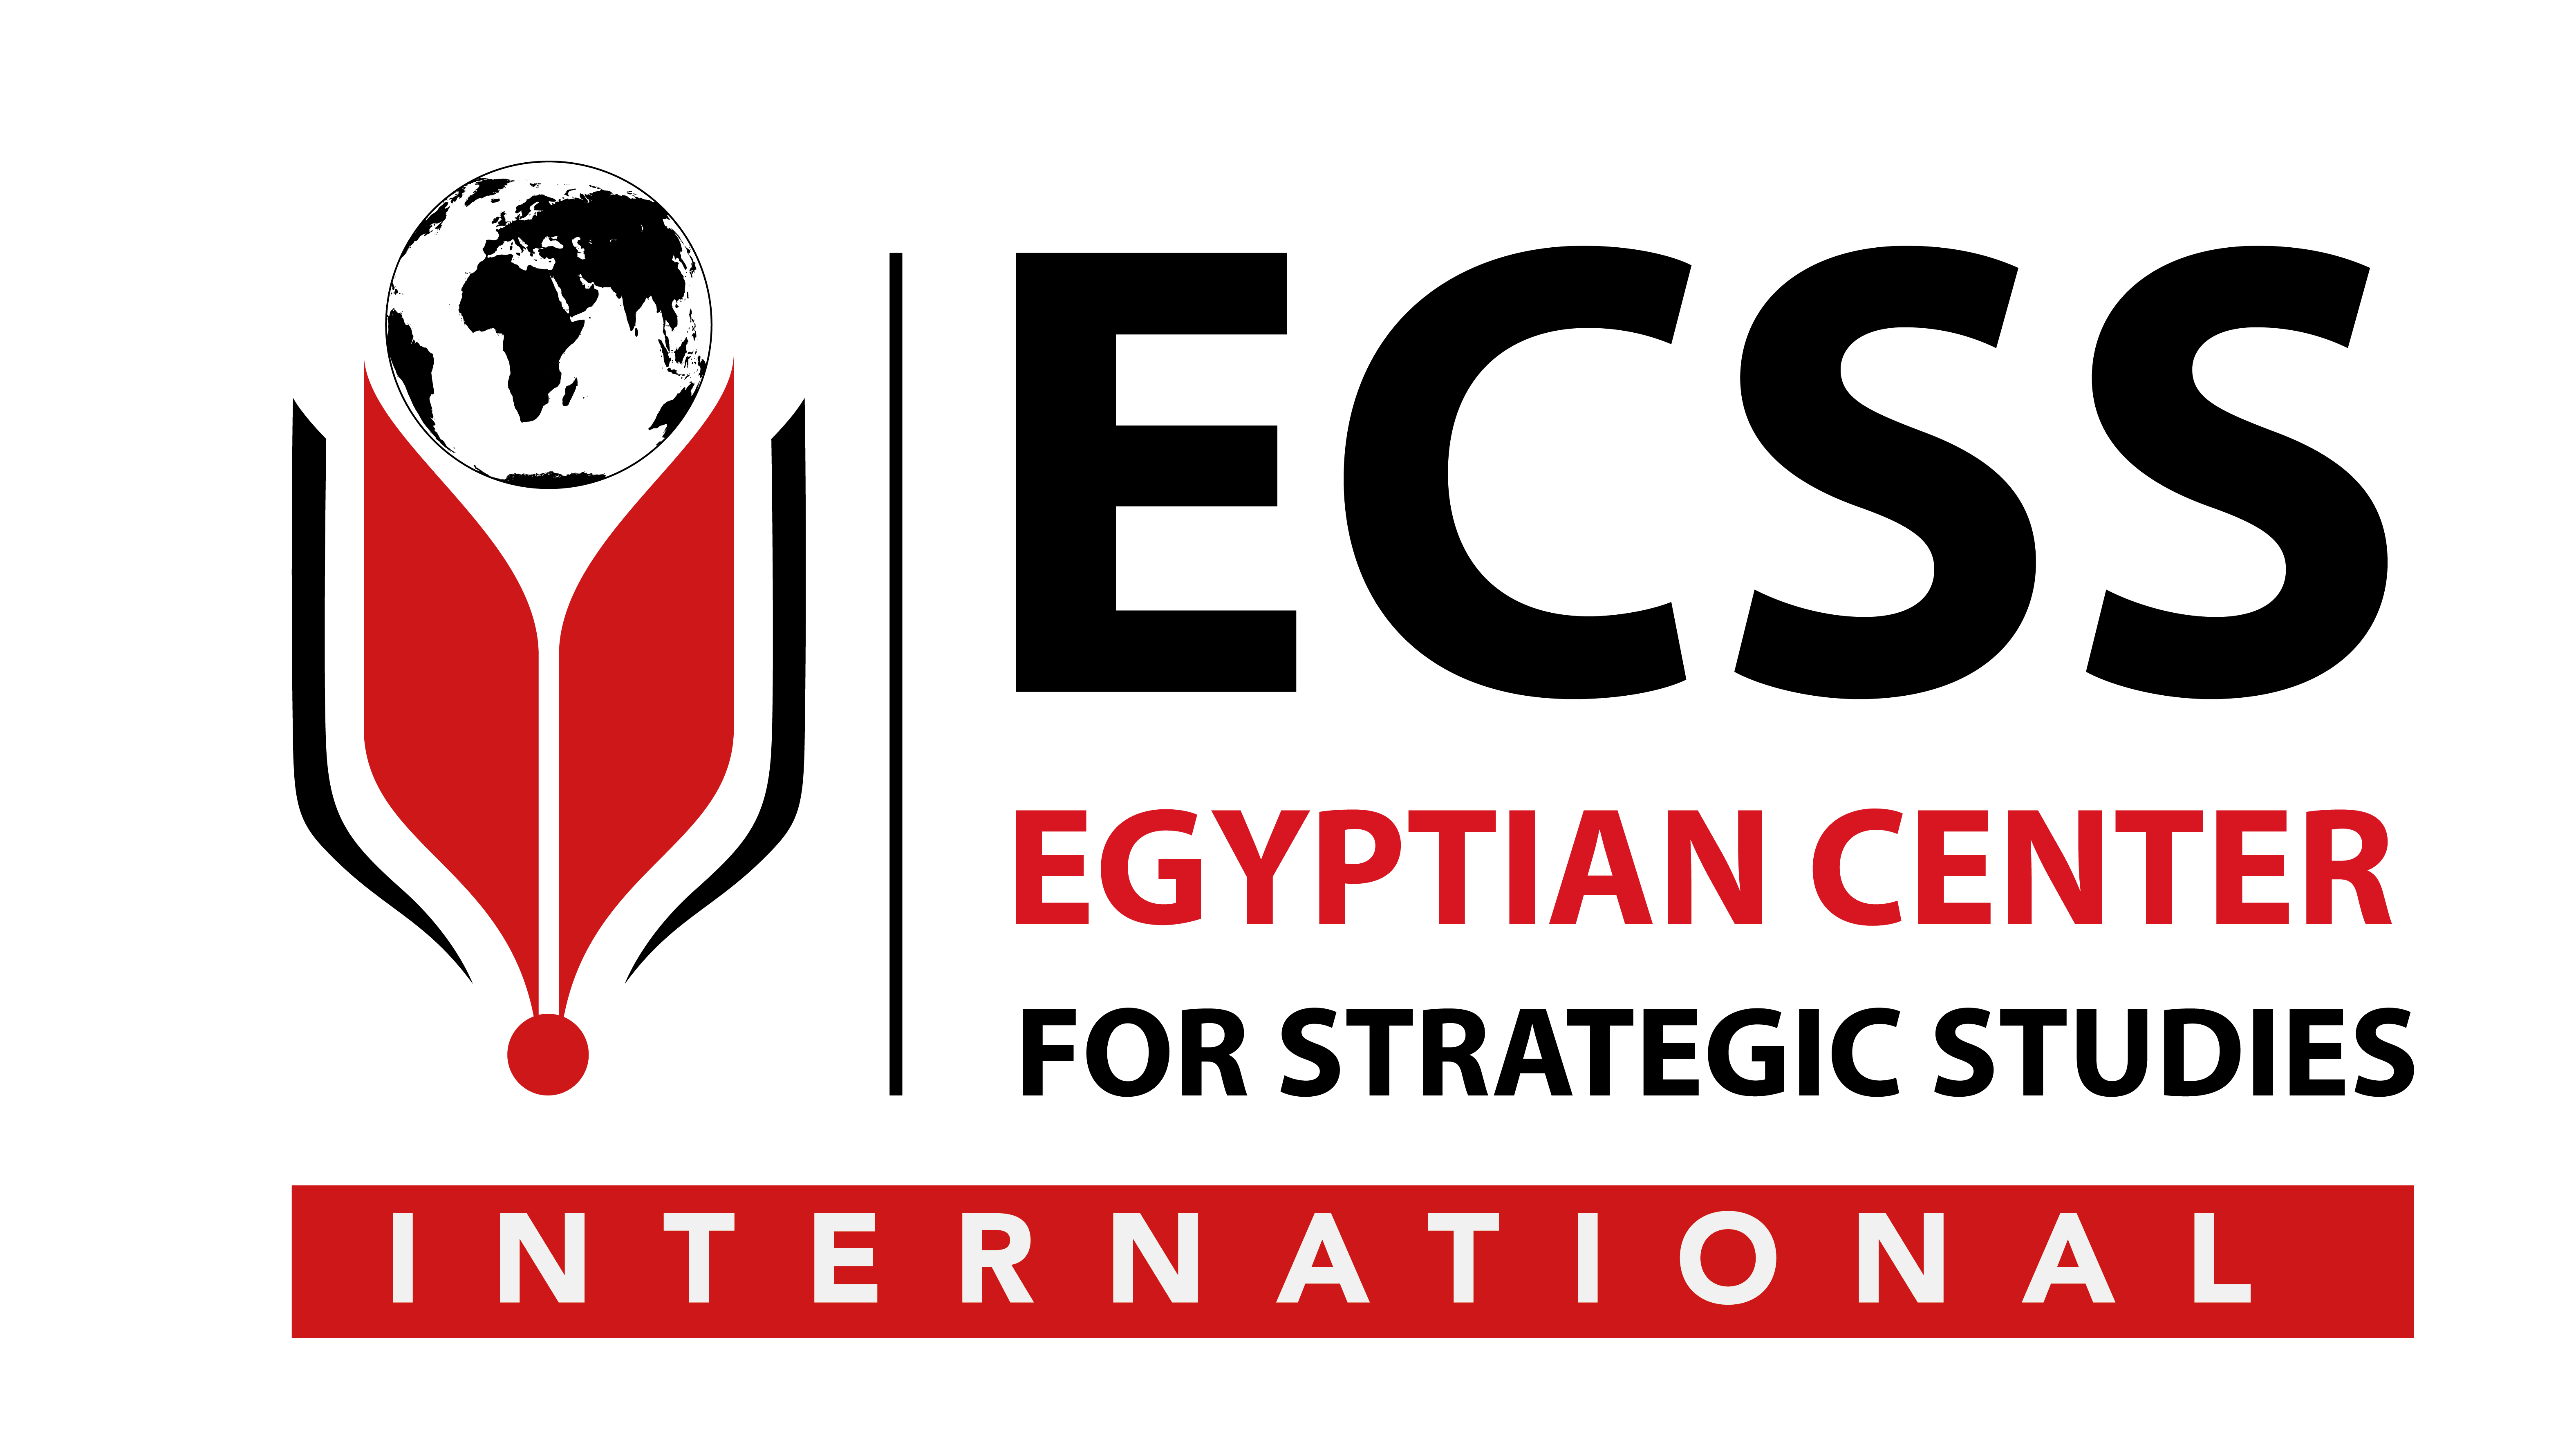 ECSS - Egyptian Center for Strategic Studies